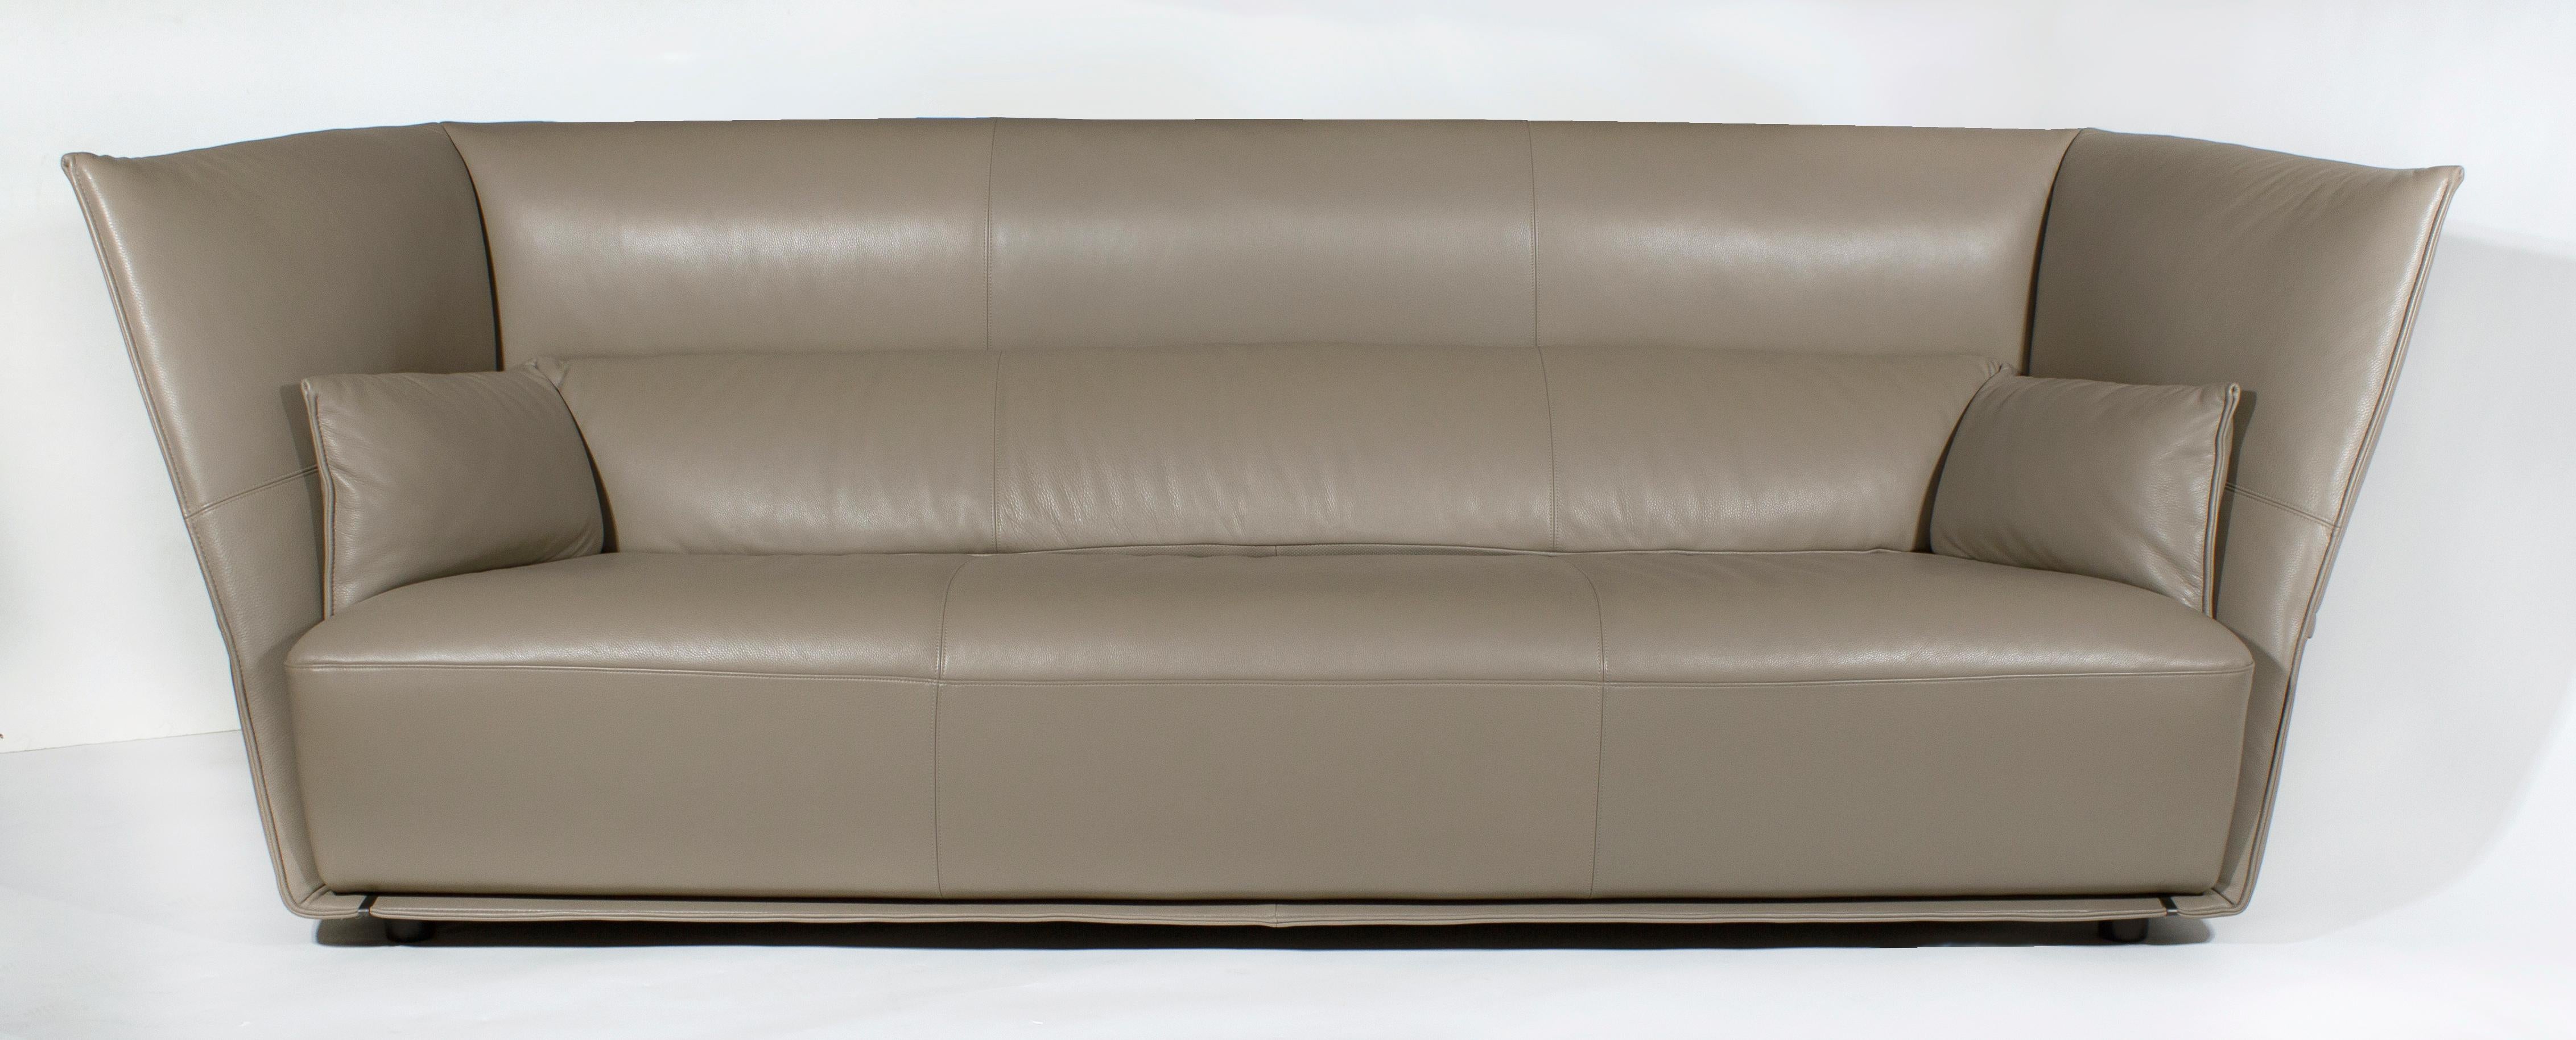 Außergewöhnlich bequemes Sofa, das sich an den richtigen Stellen anschmiegt und den ganzen Körper umschließt, um eine Sitzumgebung zu schaffen. Die Vollnarbenlederpolsterung fühlt sich weich an und ist entweder in der Farbgebung SC34 Maggese oder